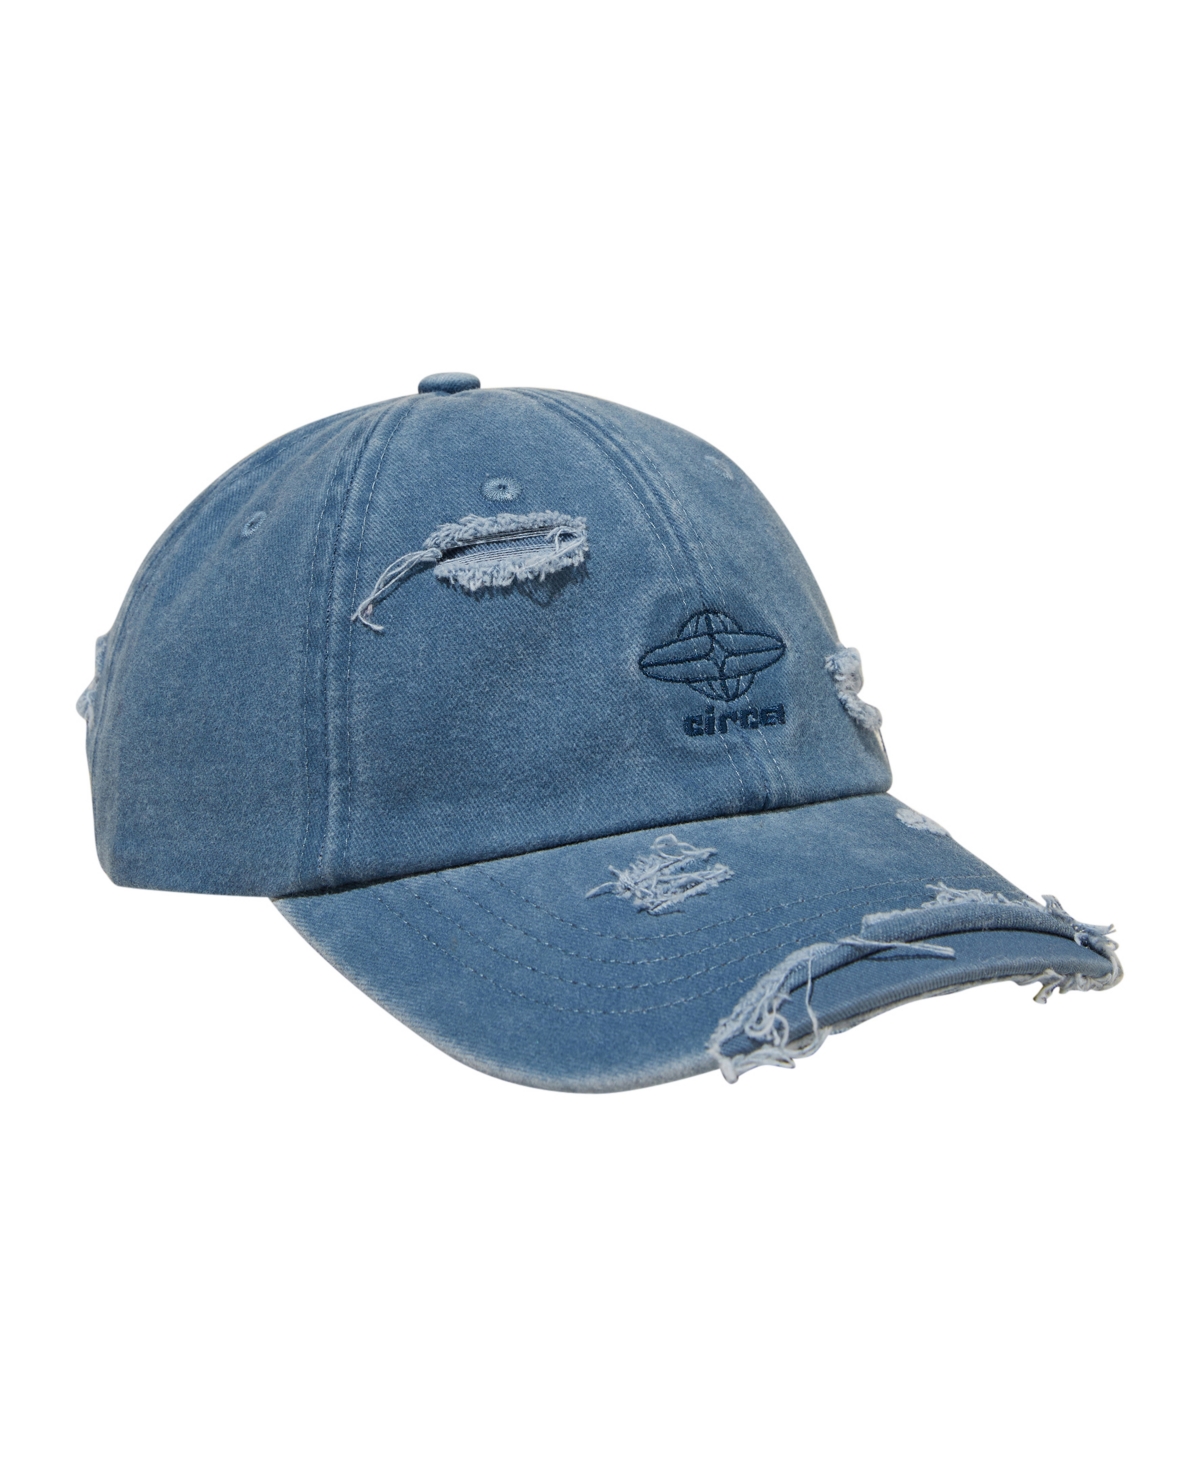 Men's Vintage Strap Back Dad Hat - Blue